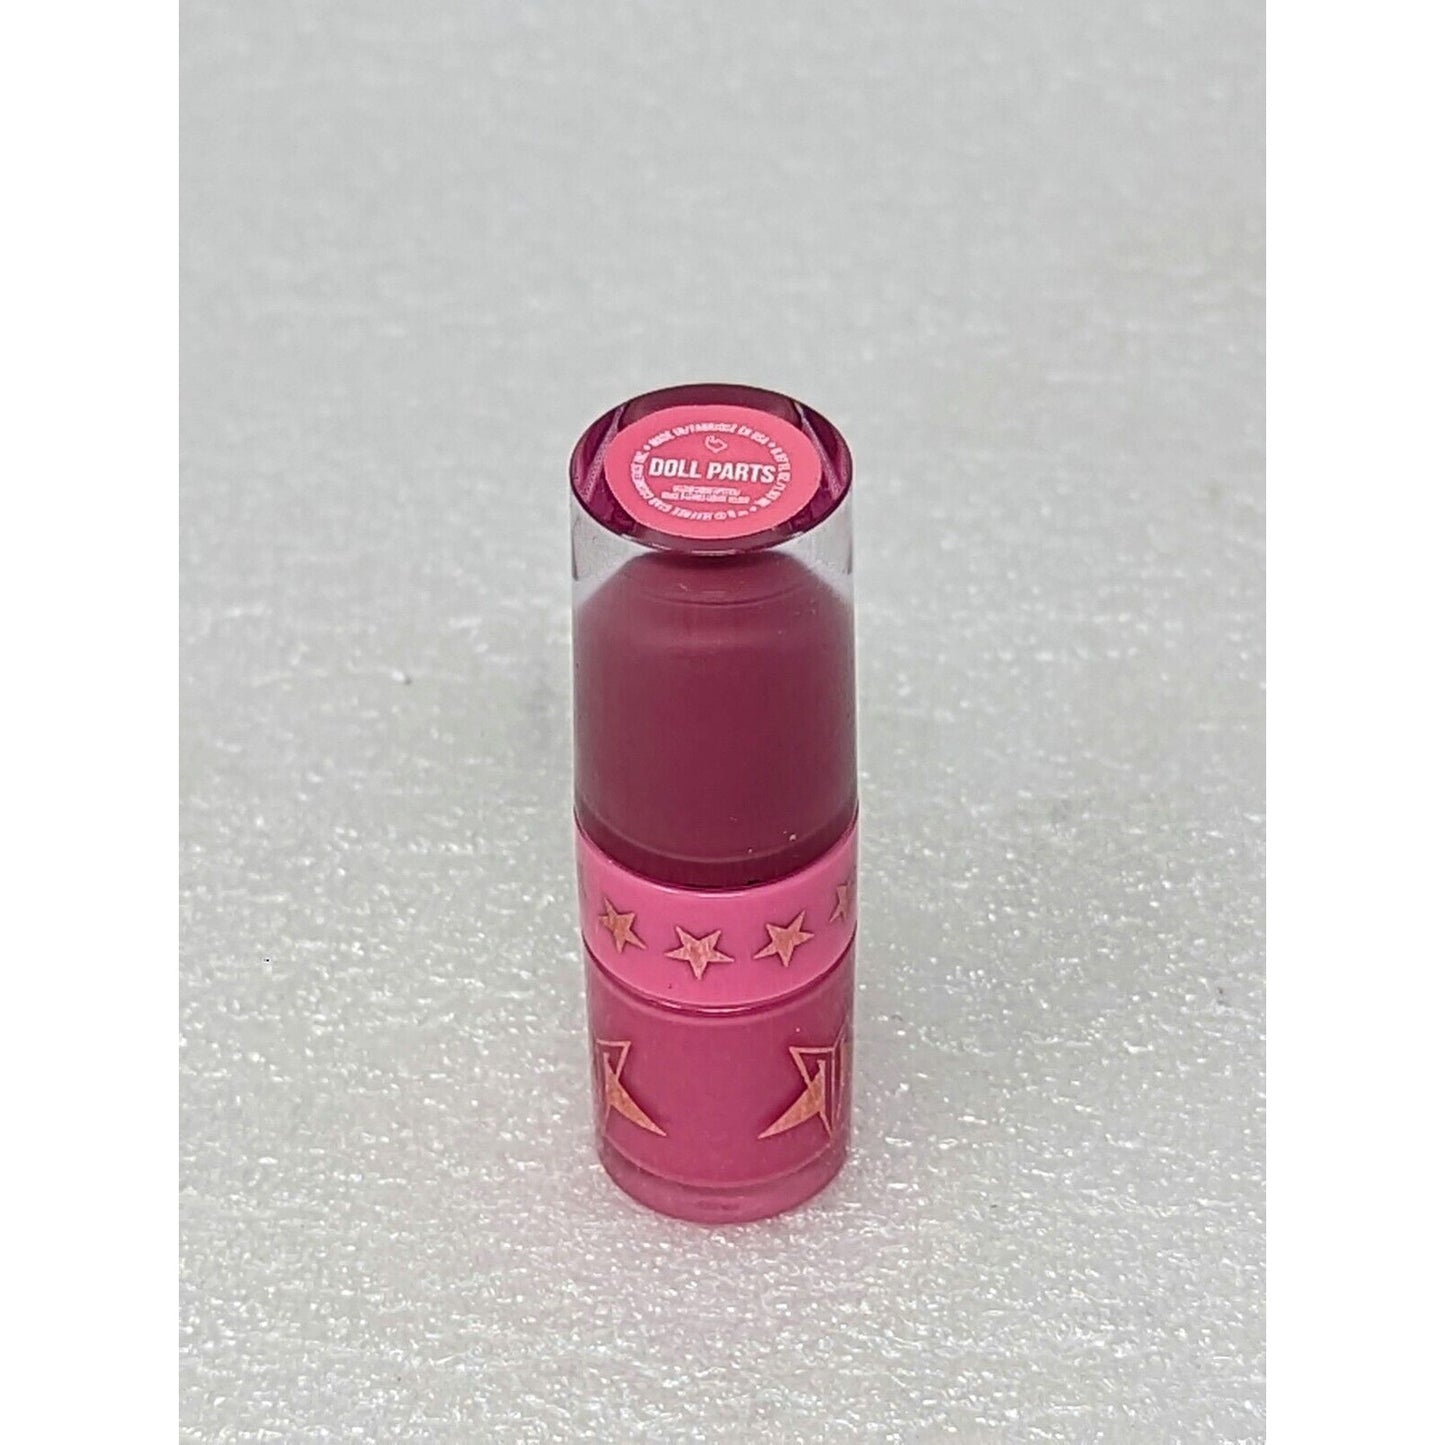 Jeffree Star Velour Liquid Lipstick Mini .07 oz Doll Parts